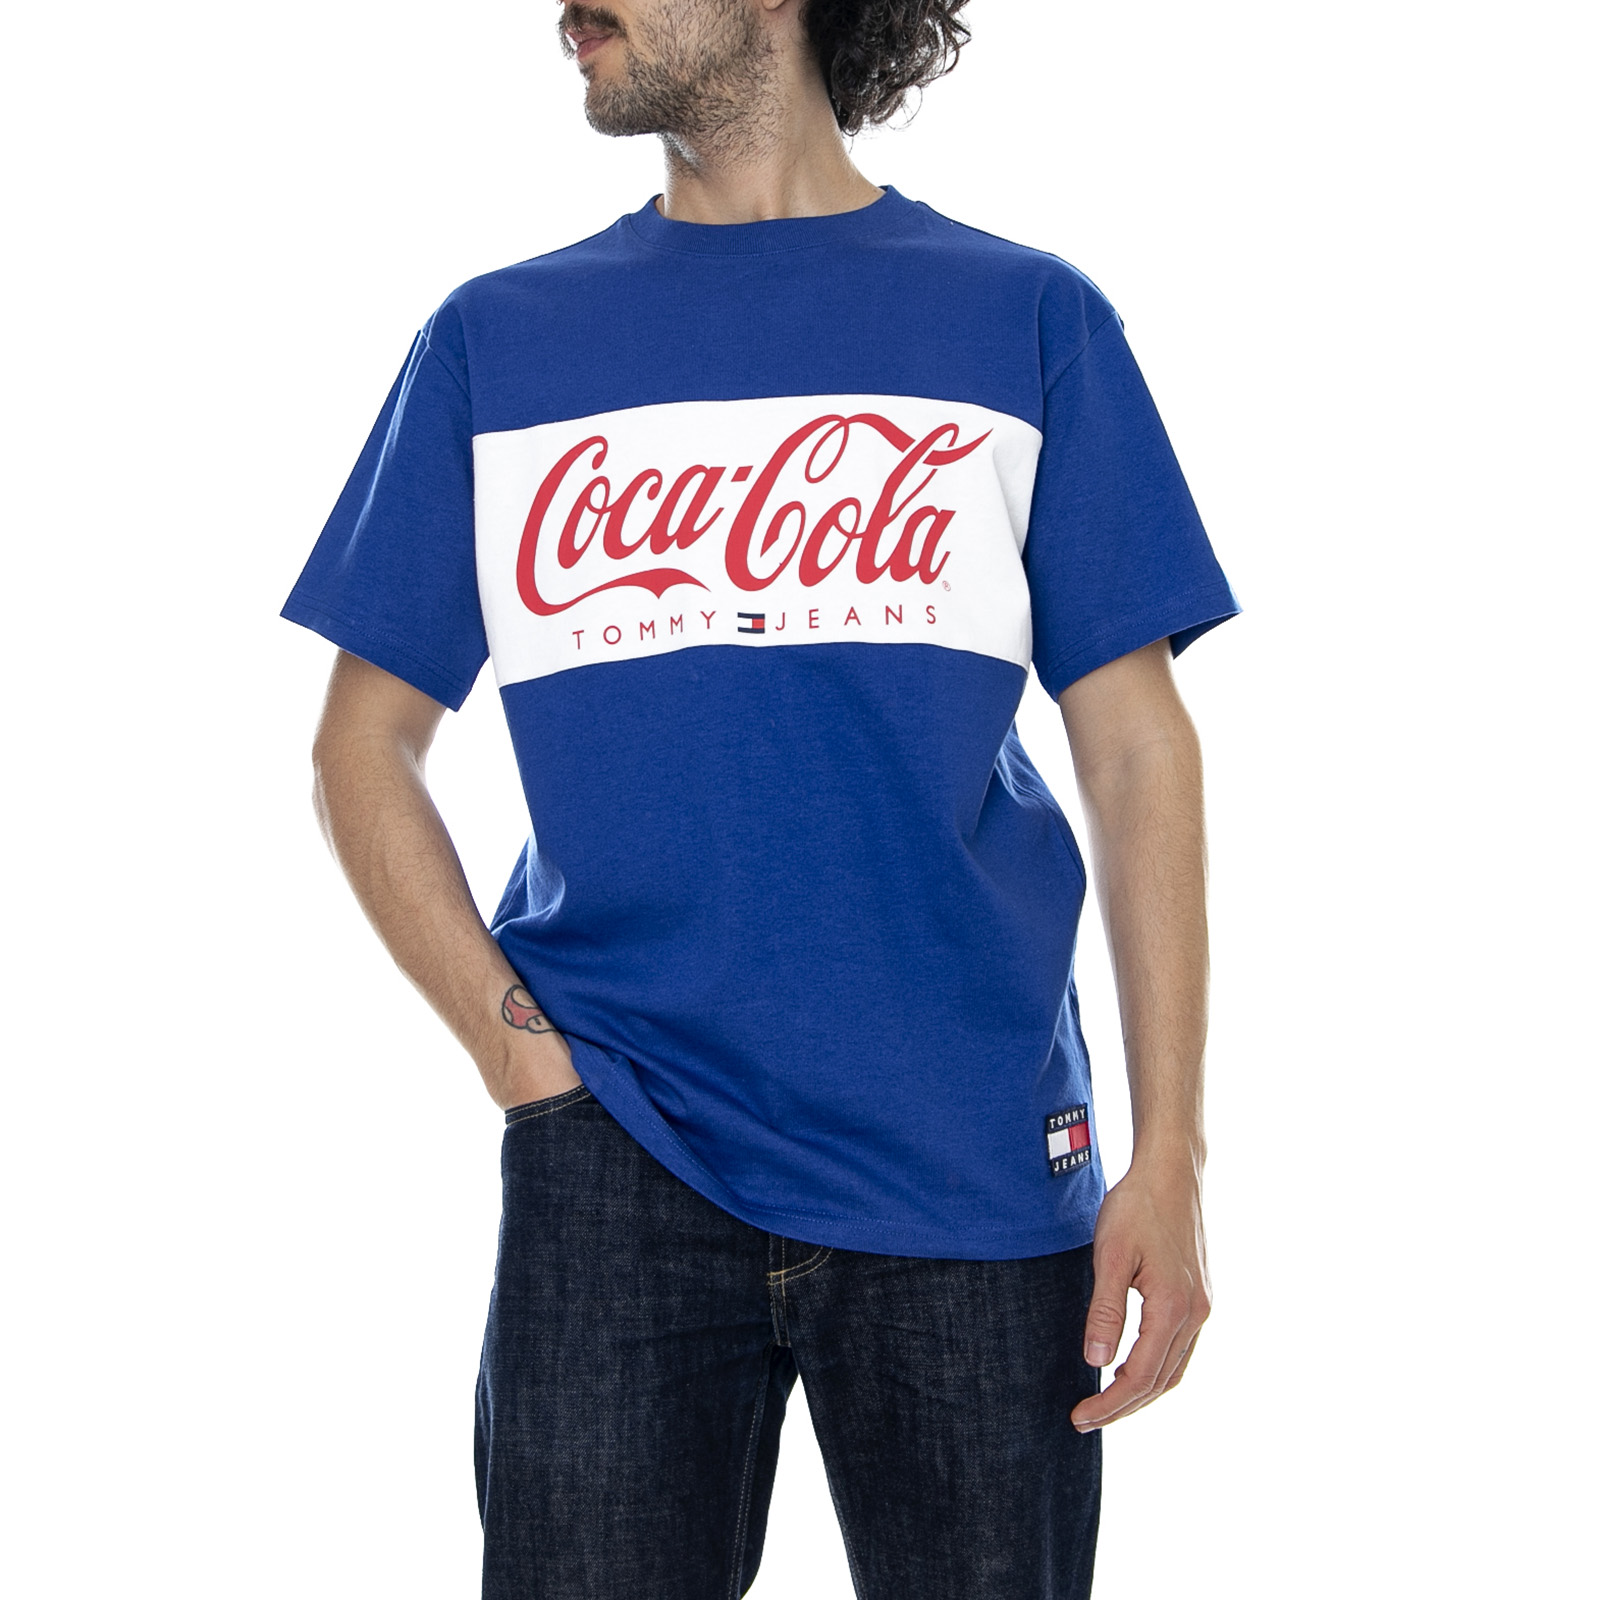 coca cola tommy hilfiger t shirt